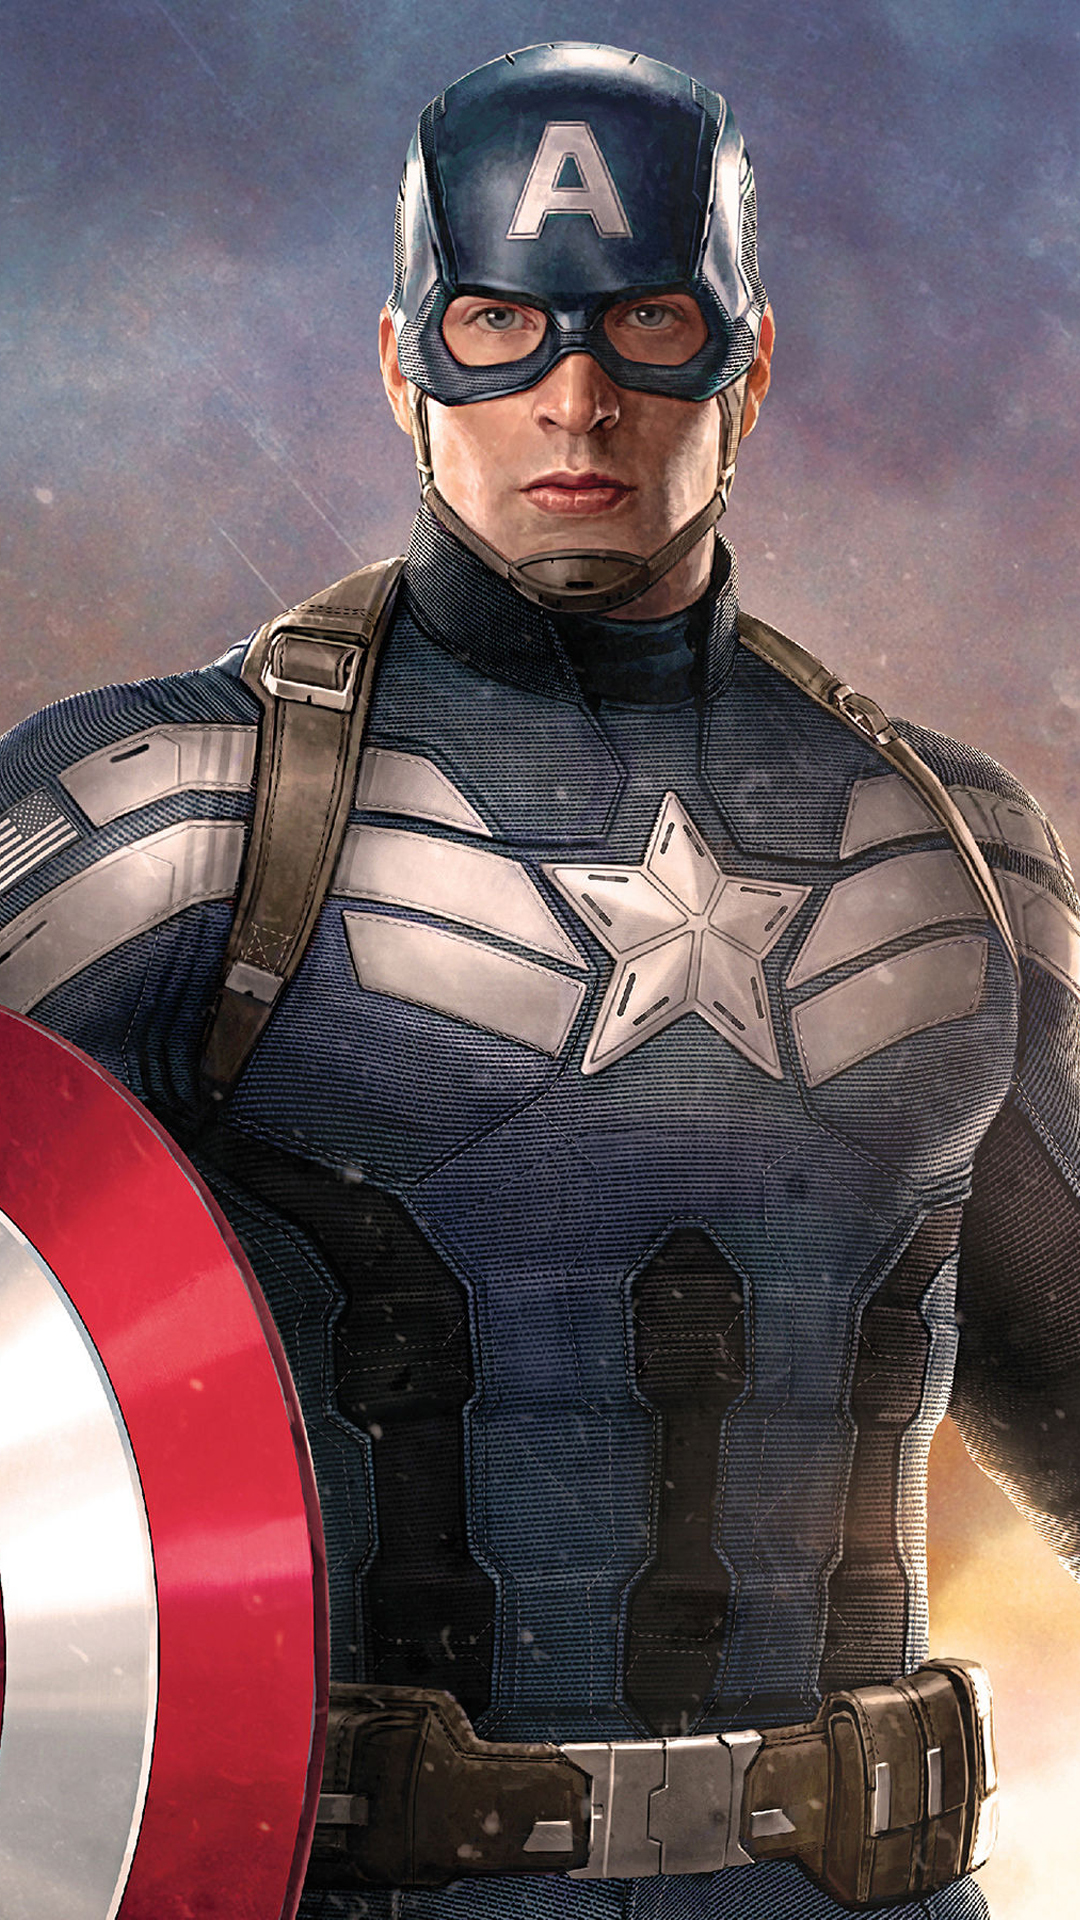 キャピタンアメリカ壁紙,スーパーヒーロー,架空の人物,ヒーロー,ナイトフクロウ,キャプテン・アメリカ